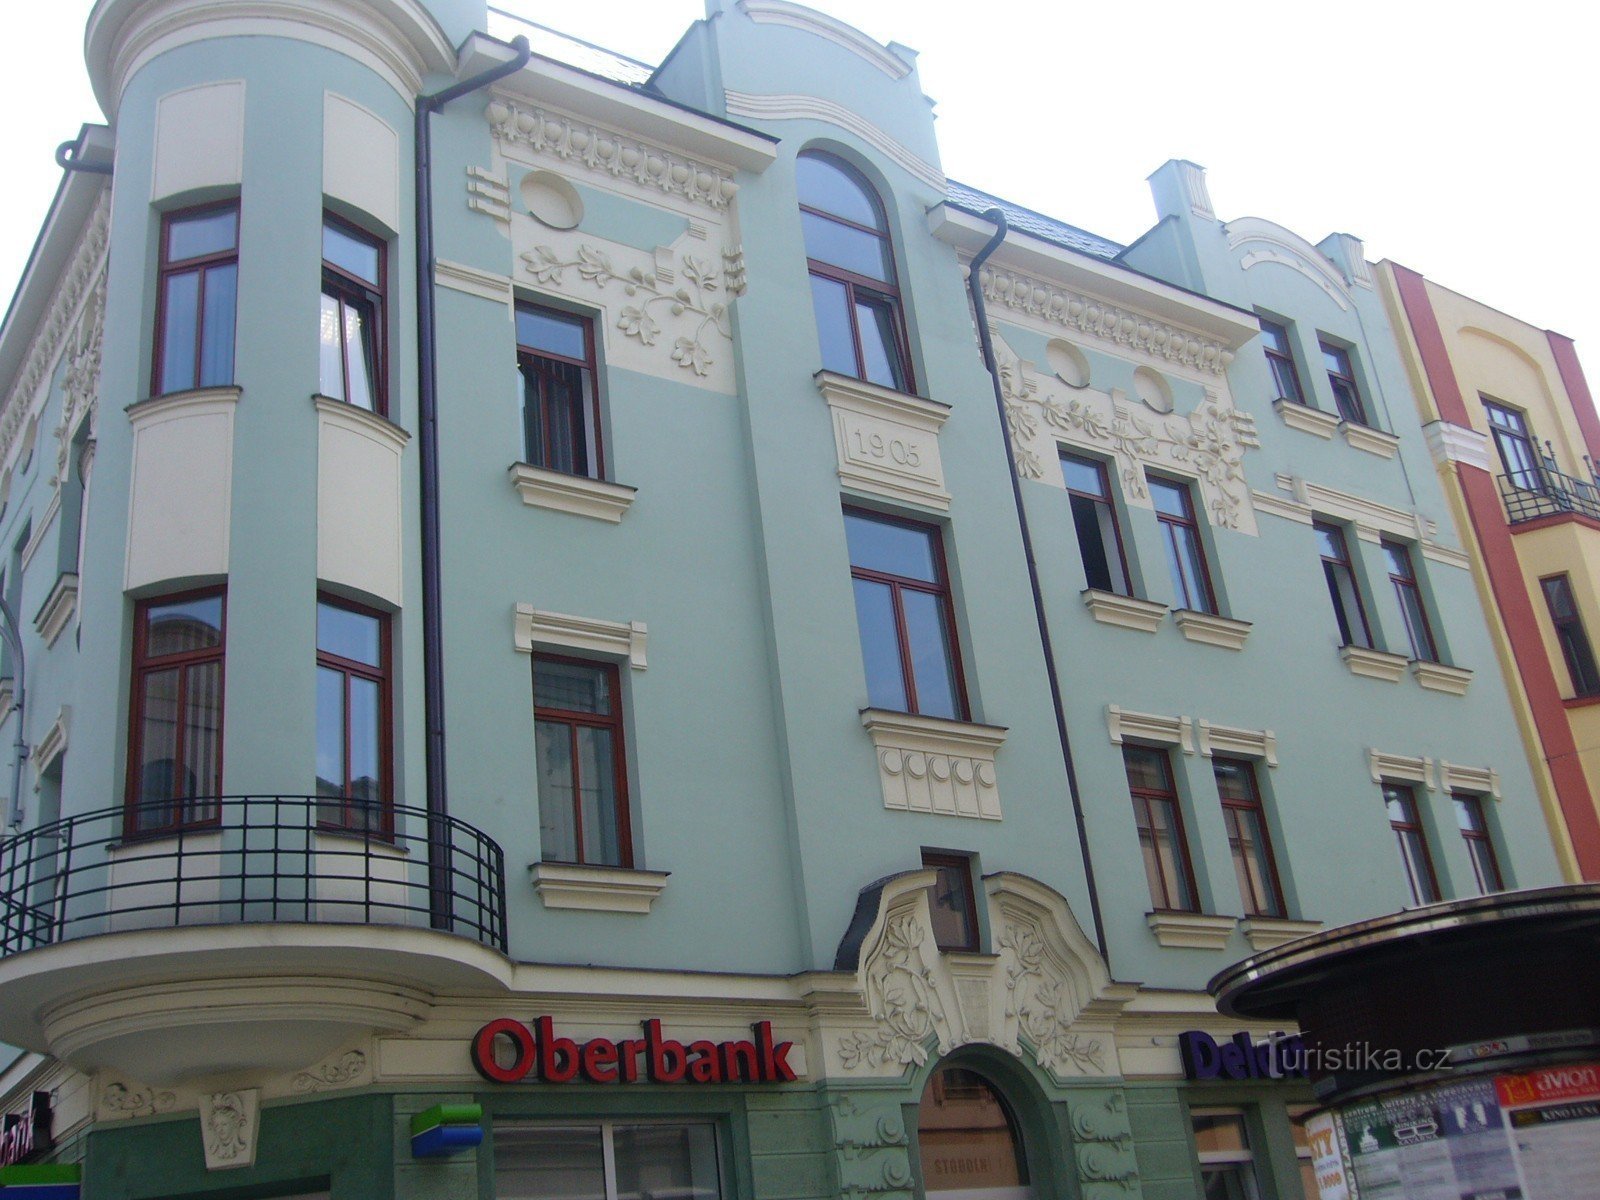 Dom w stylu secesyjnym na rogu ulic Nádražní i Stodolní